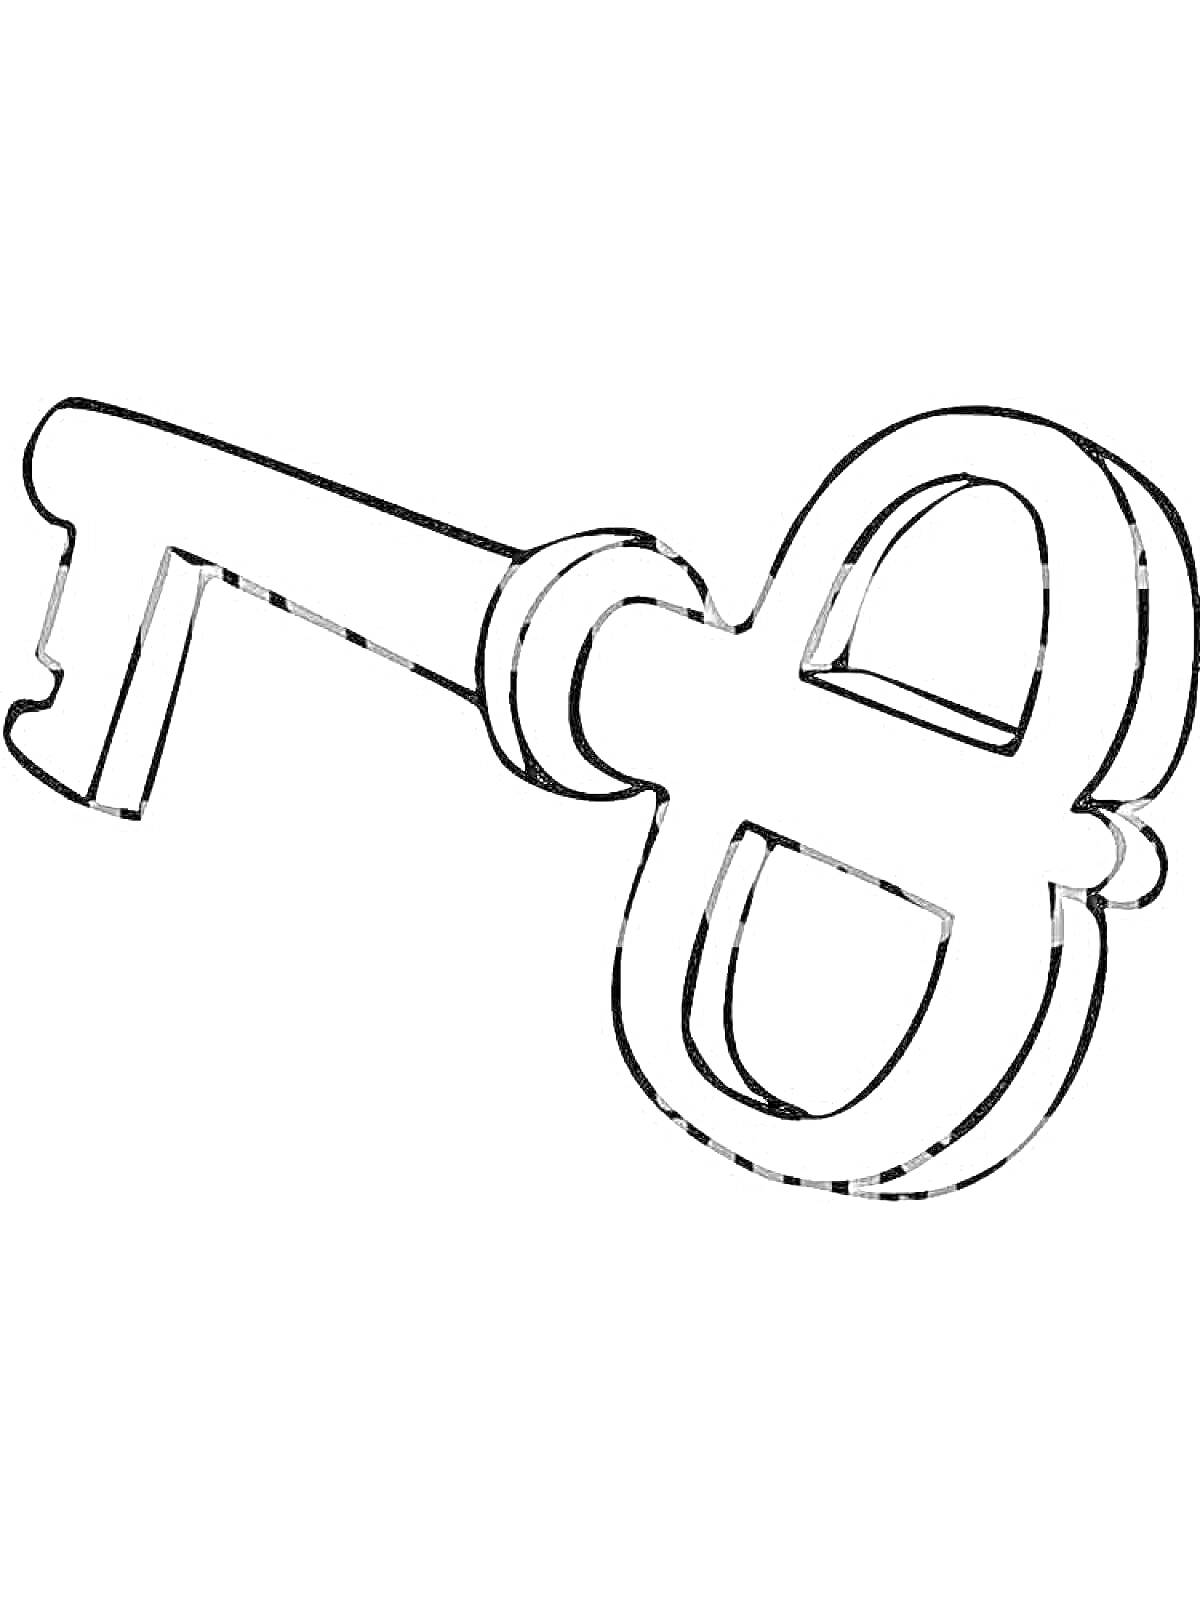 Раскраска Ключ с кольцом и кольцевым навершием внутри на черно-белом изображении